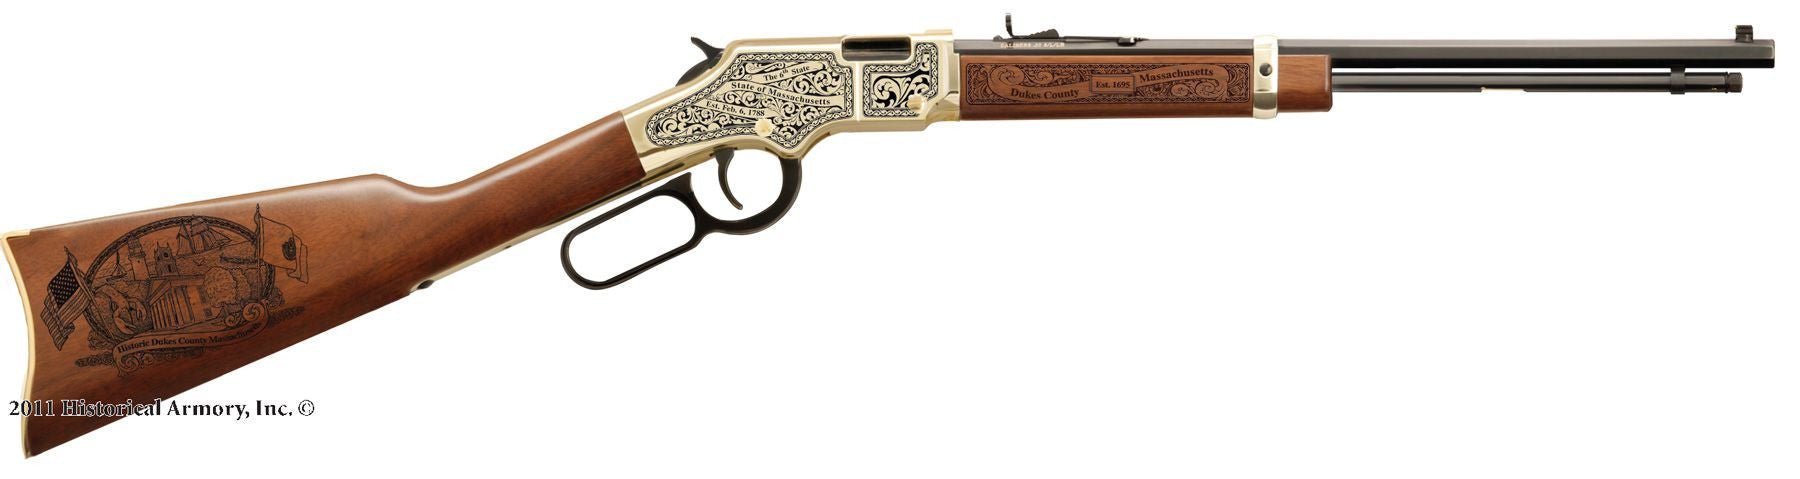 Dukes county massachusetts engraved rifle H004